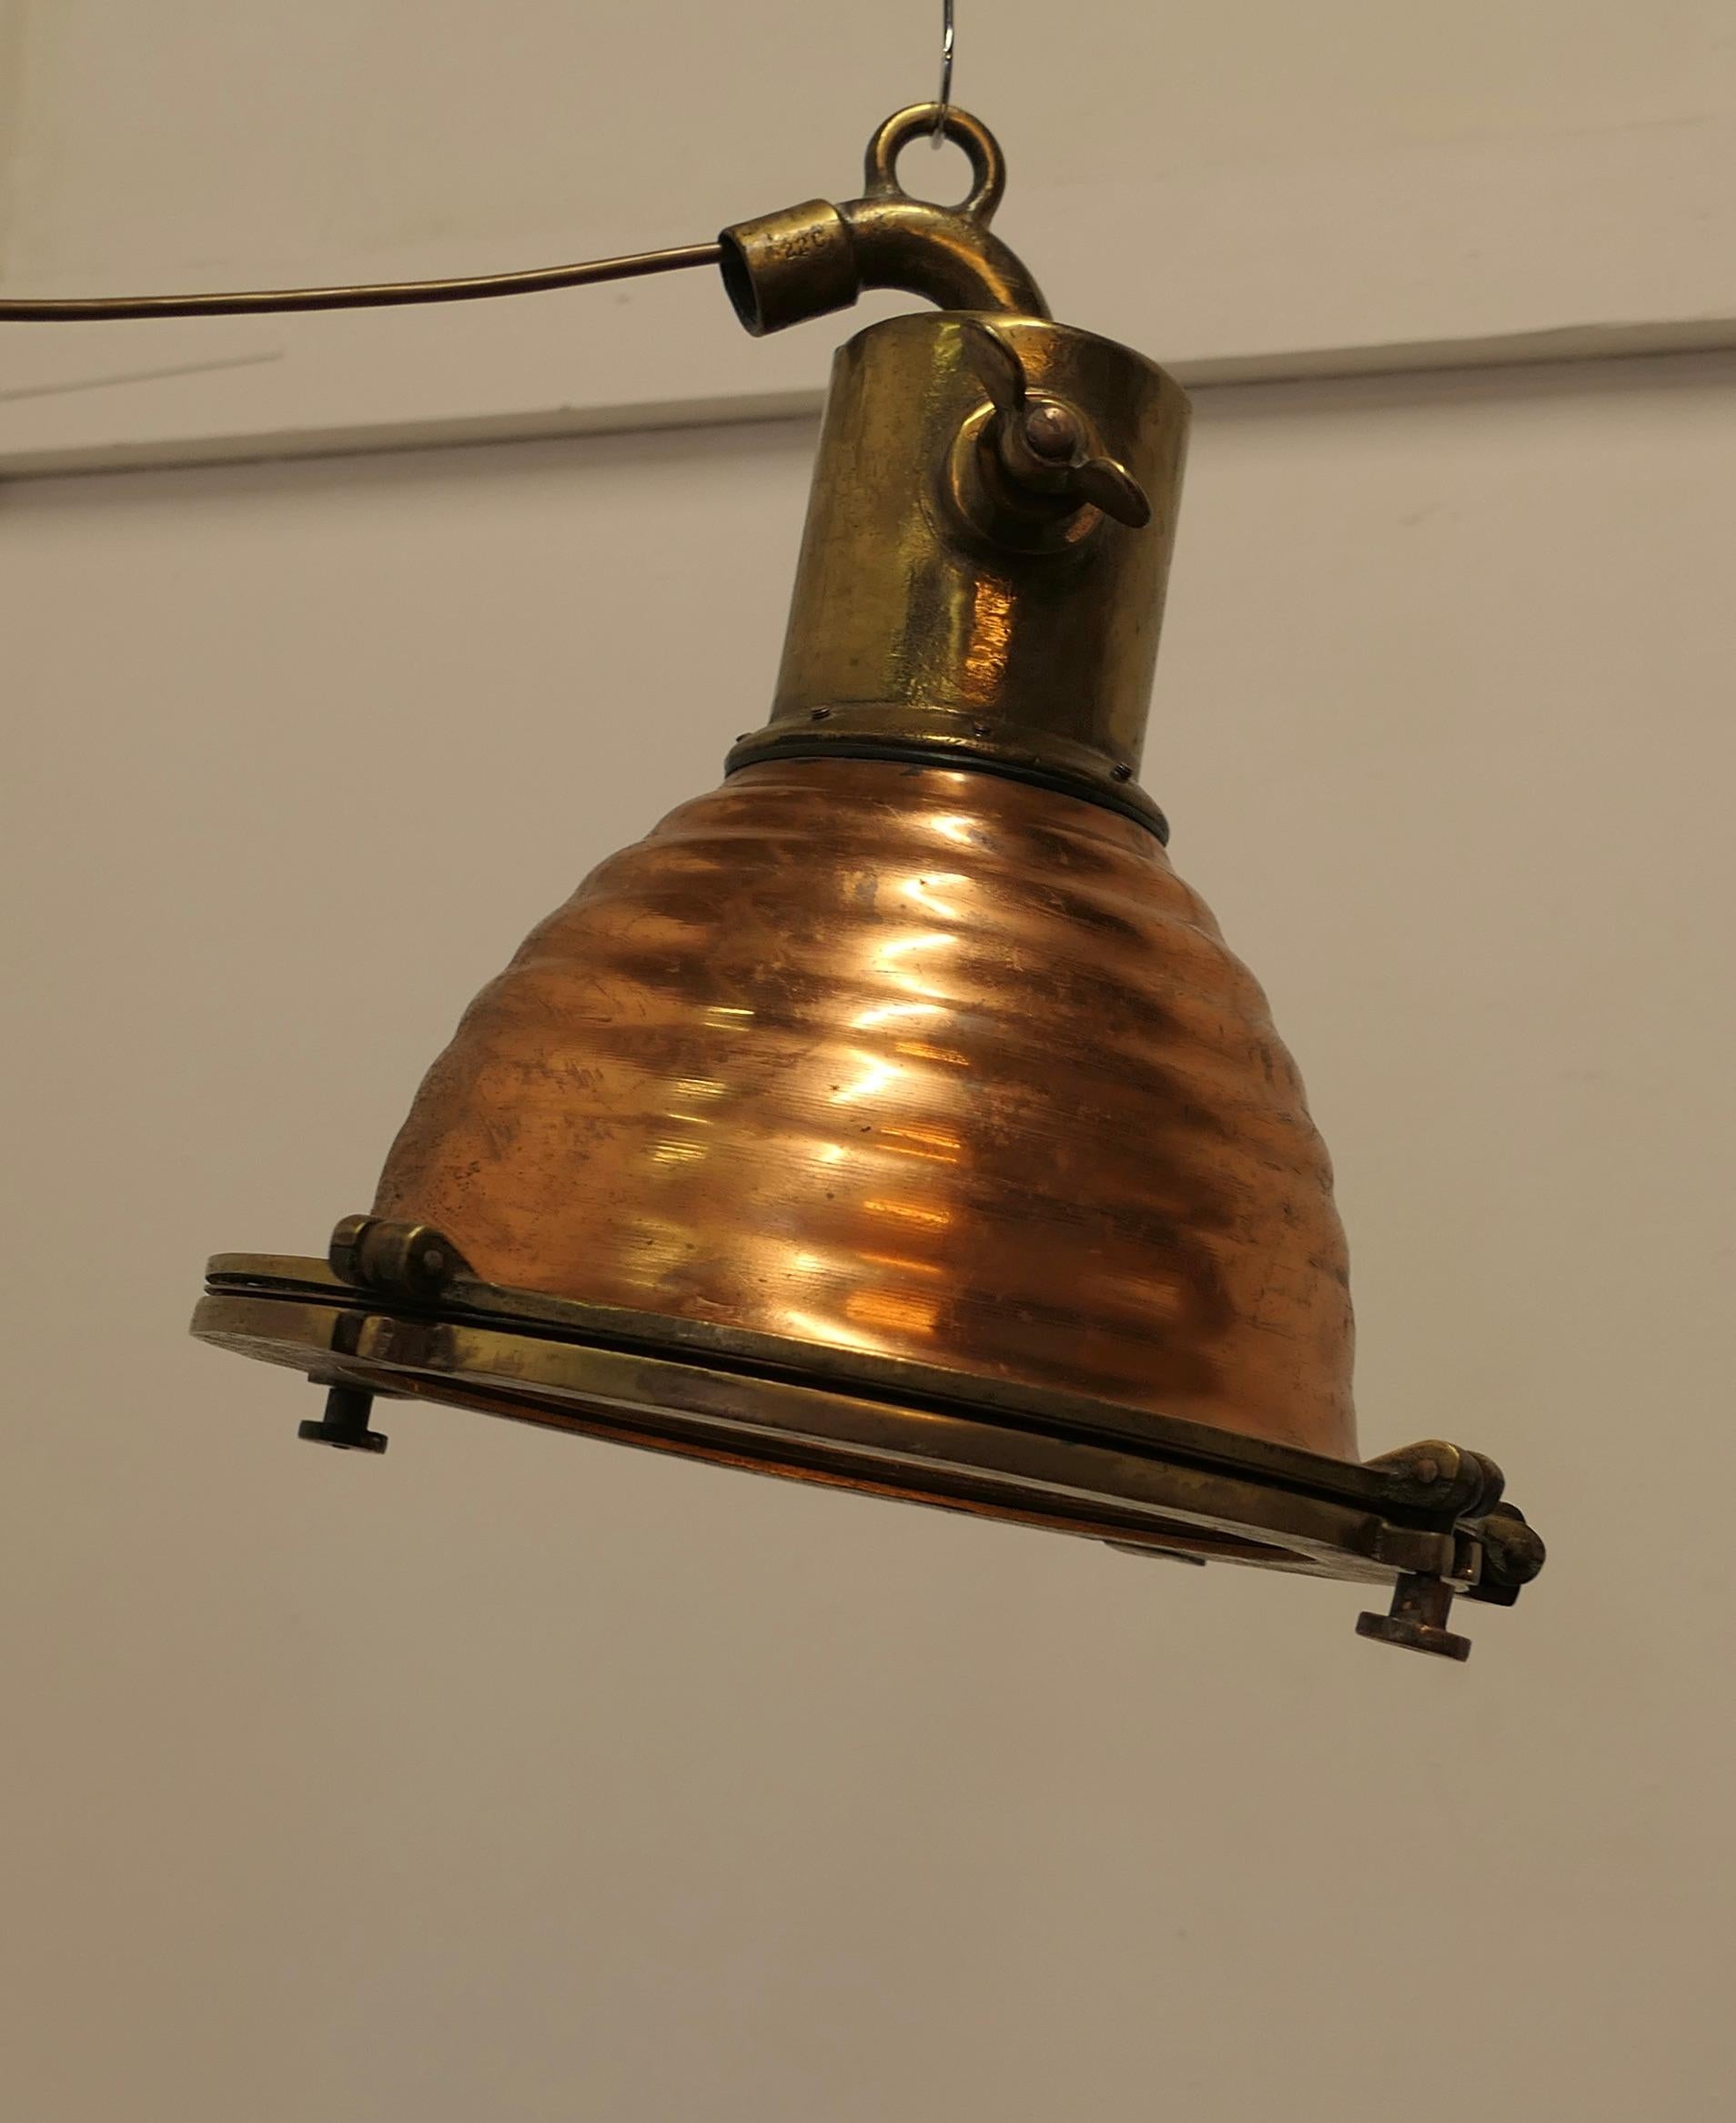 Lampe de recherche ou spot nautique vintage en cuivre et laiton  

La lampe est en cuivre et en laiton. Elle est suspendue par le haut avec une inclinaison de 250 degrés et possède un couvercle en forme de hublot. 
L'intérieur est équipé d'un